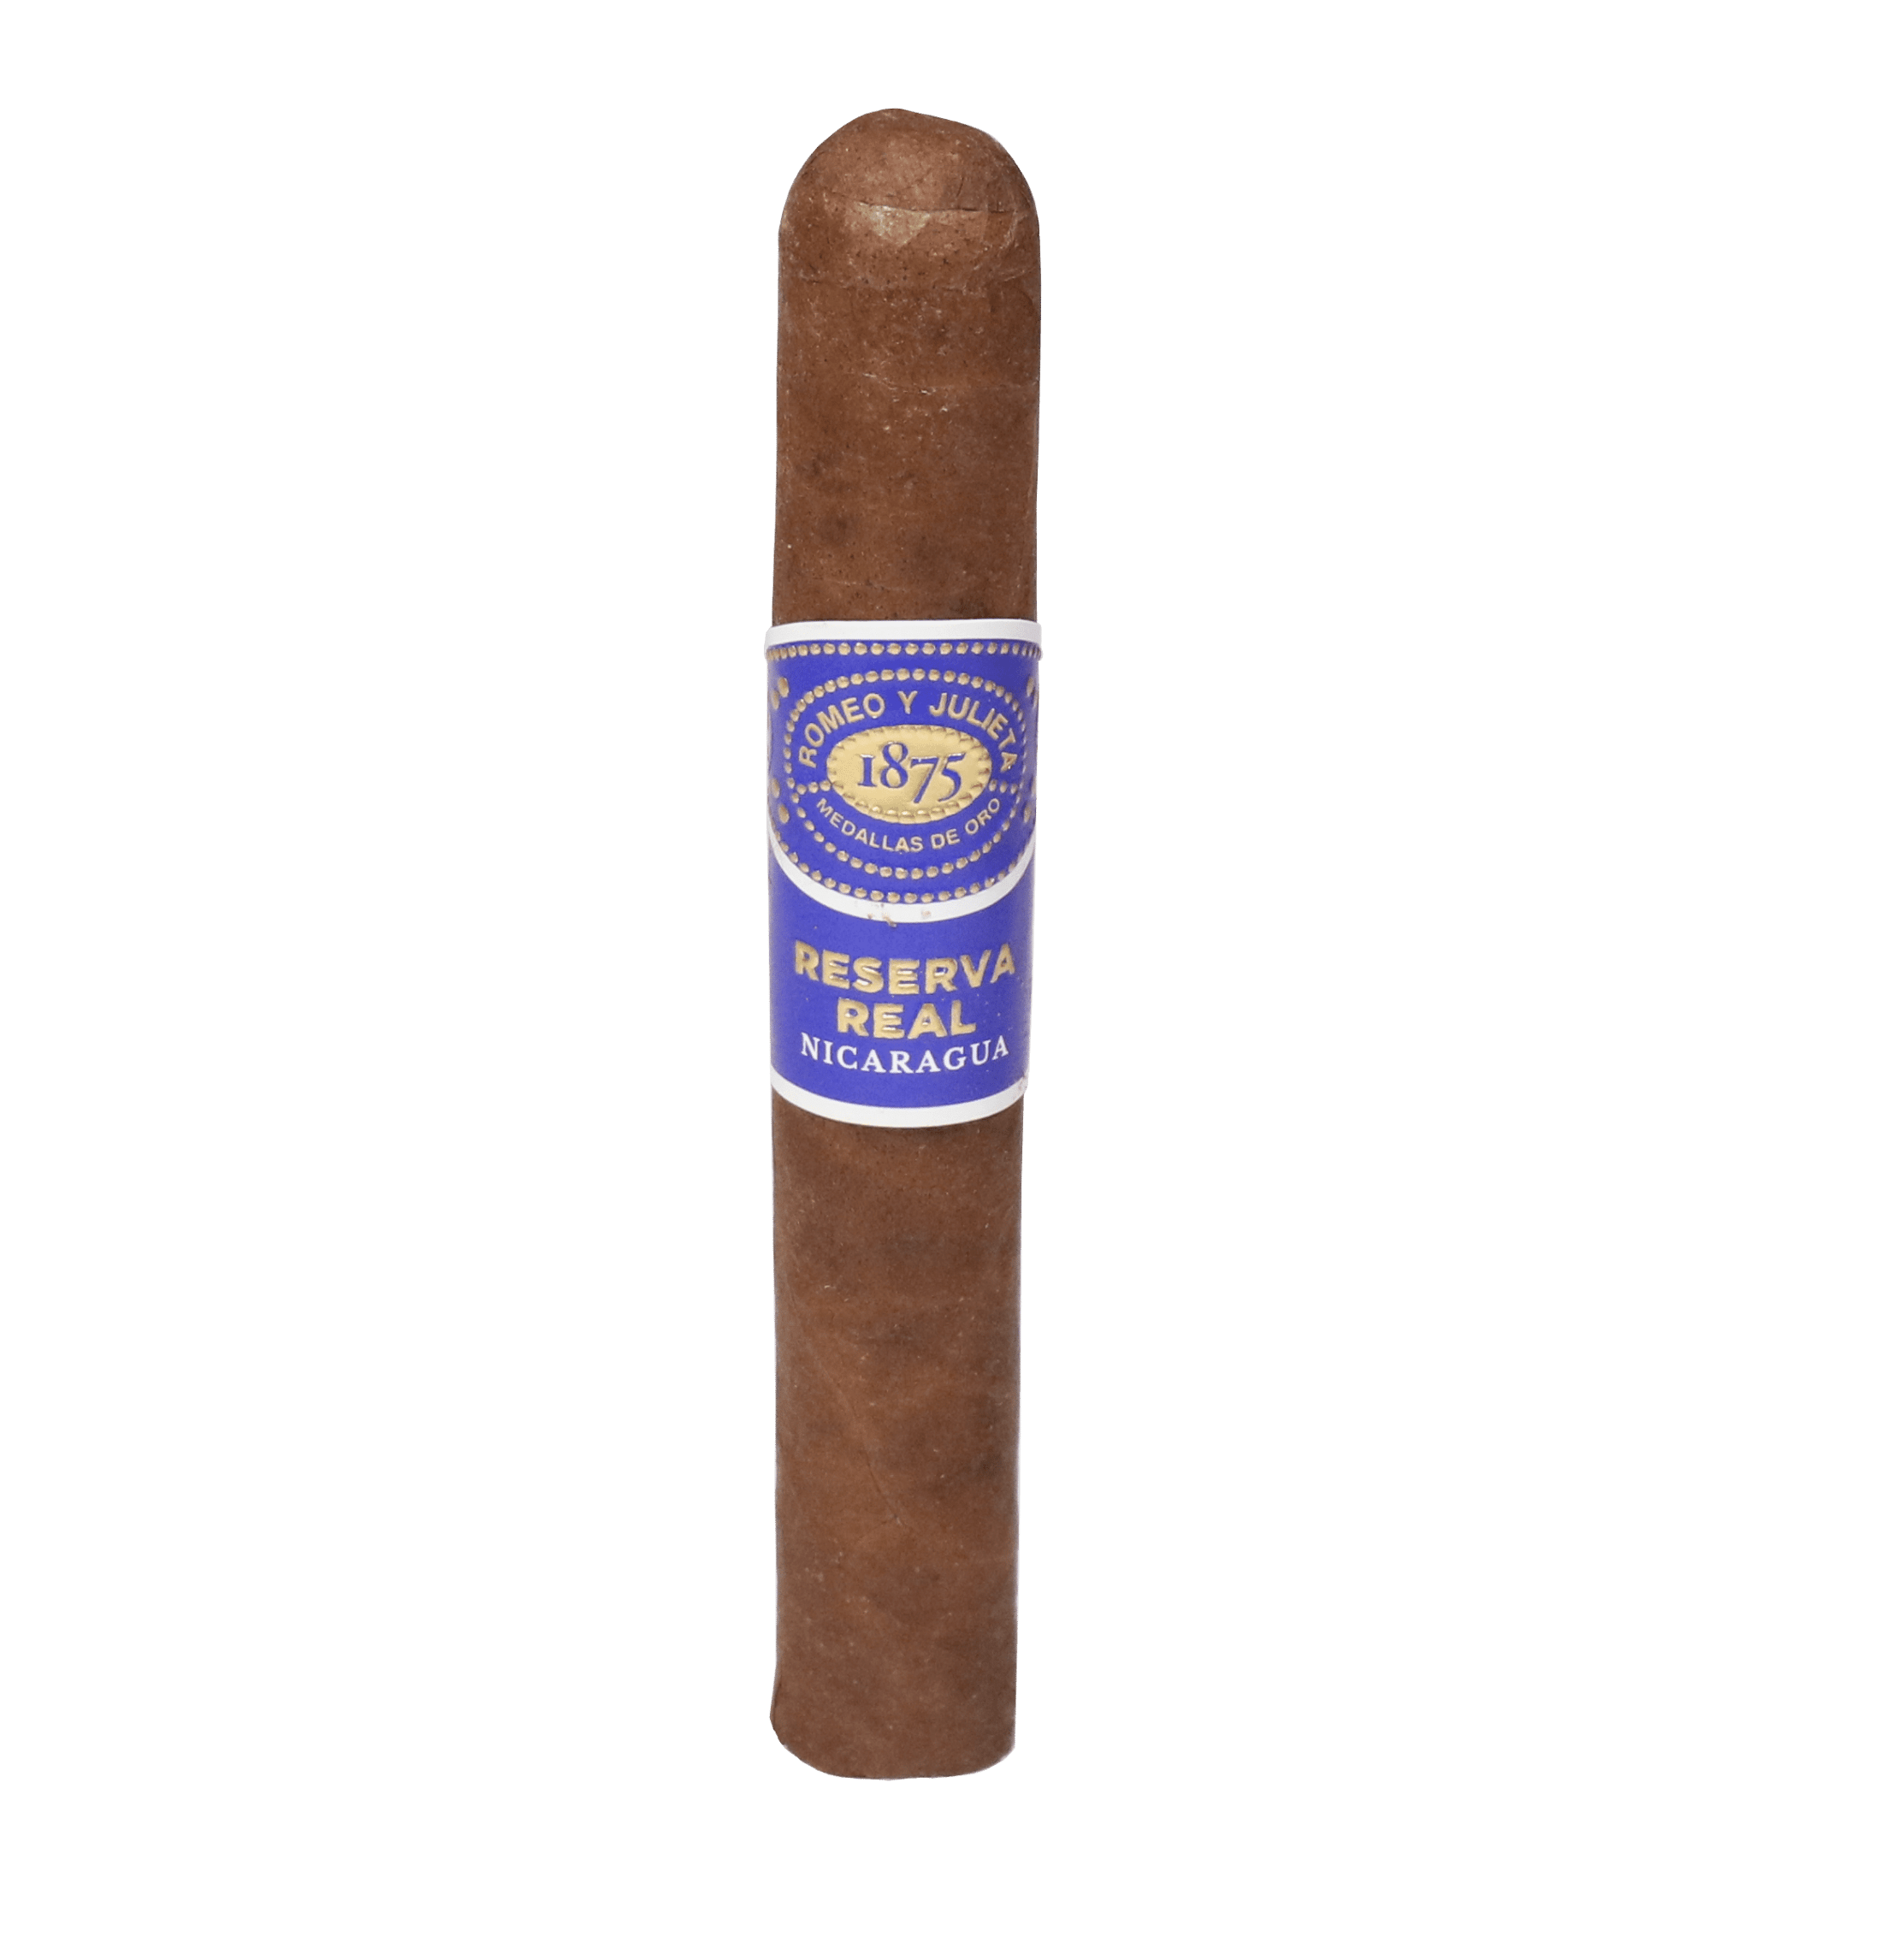 single romeo y julieta reserva real nicaragua cigar